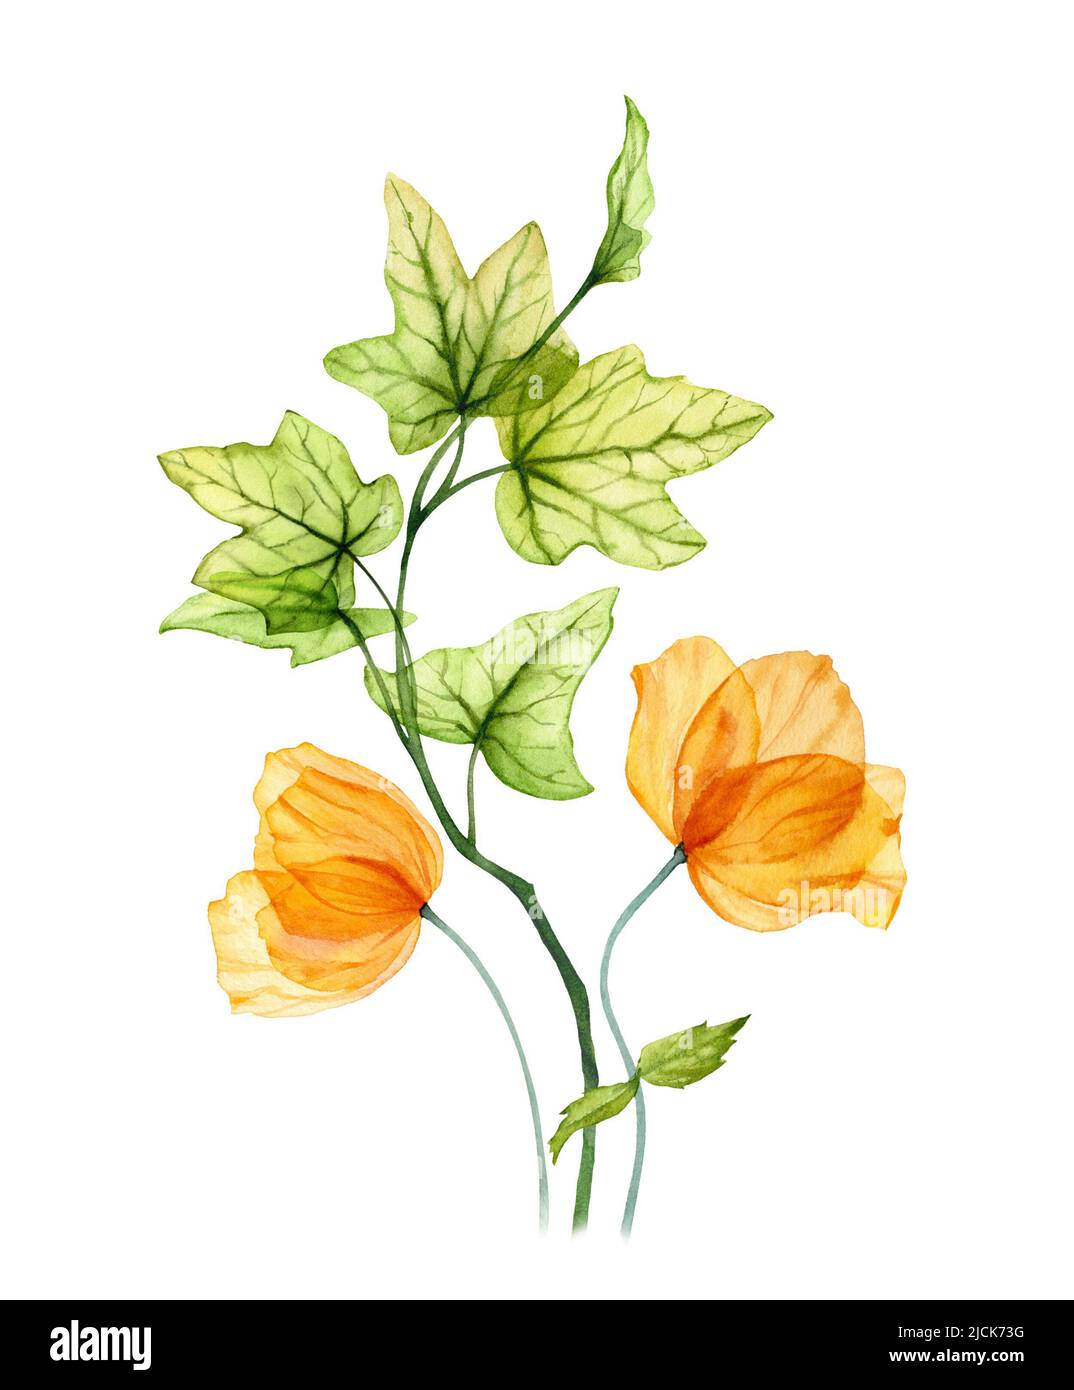 Bouquet de tulipes jaunes aquarelle. Fleurs d'orange printanière avec feuilles de lierre vertes. Composition florale dessinée à la main Banque D'Images